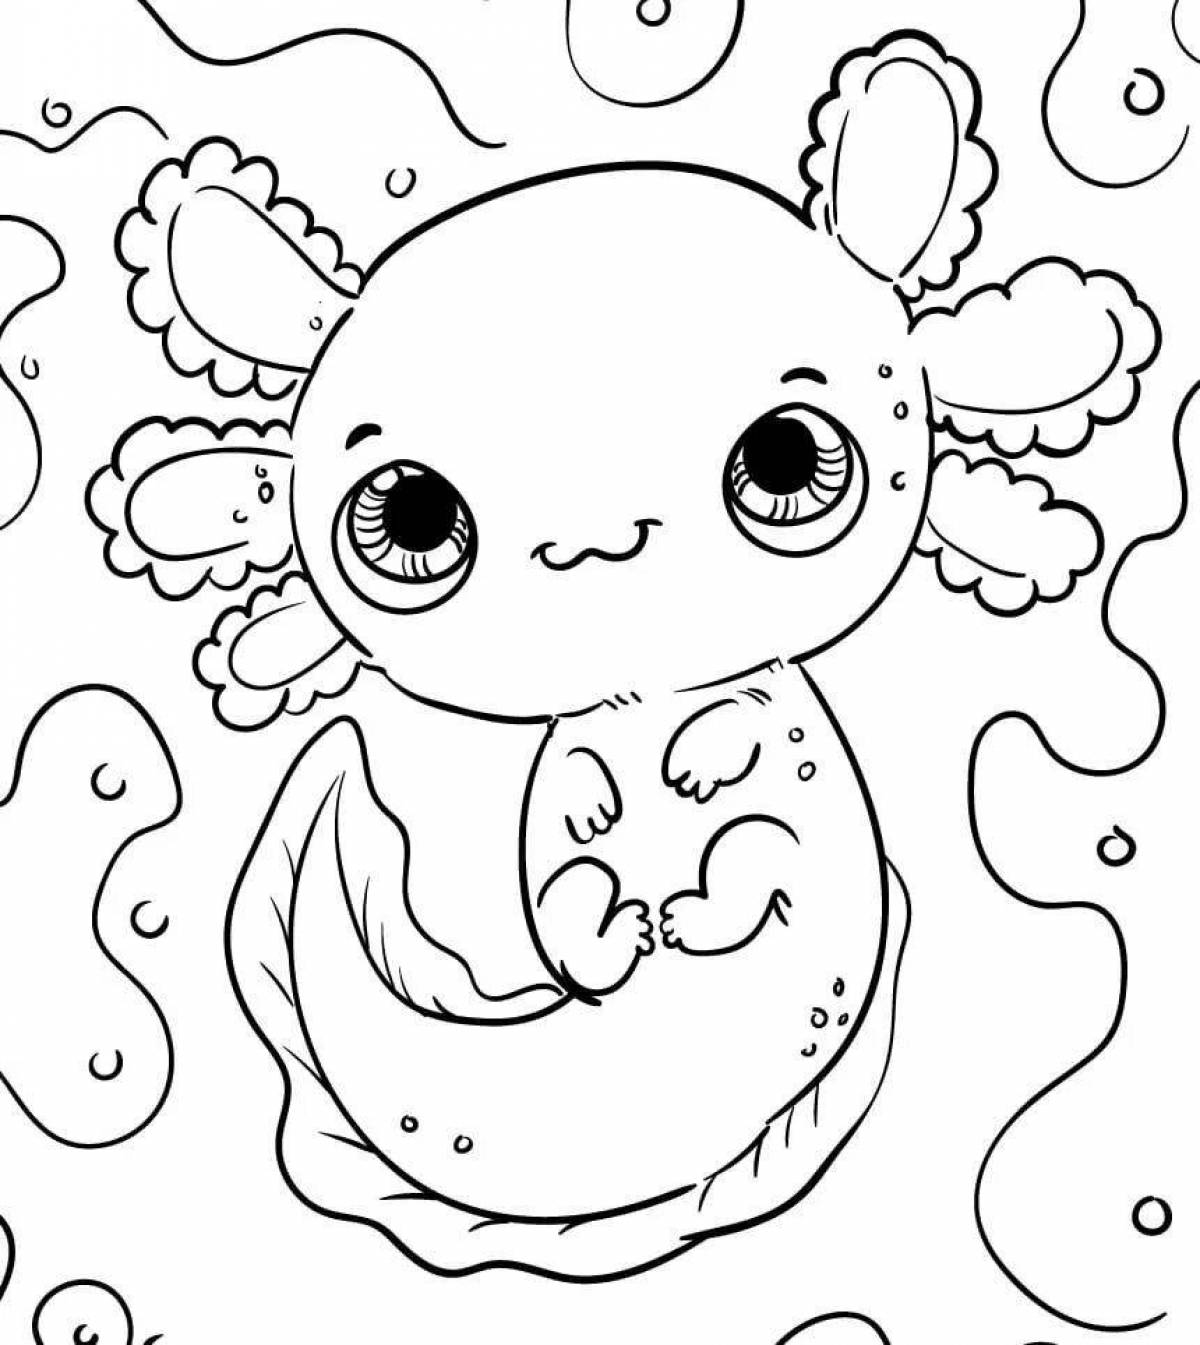 Axolotl cute #4